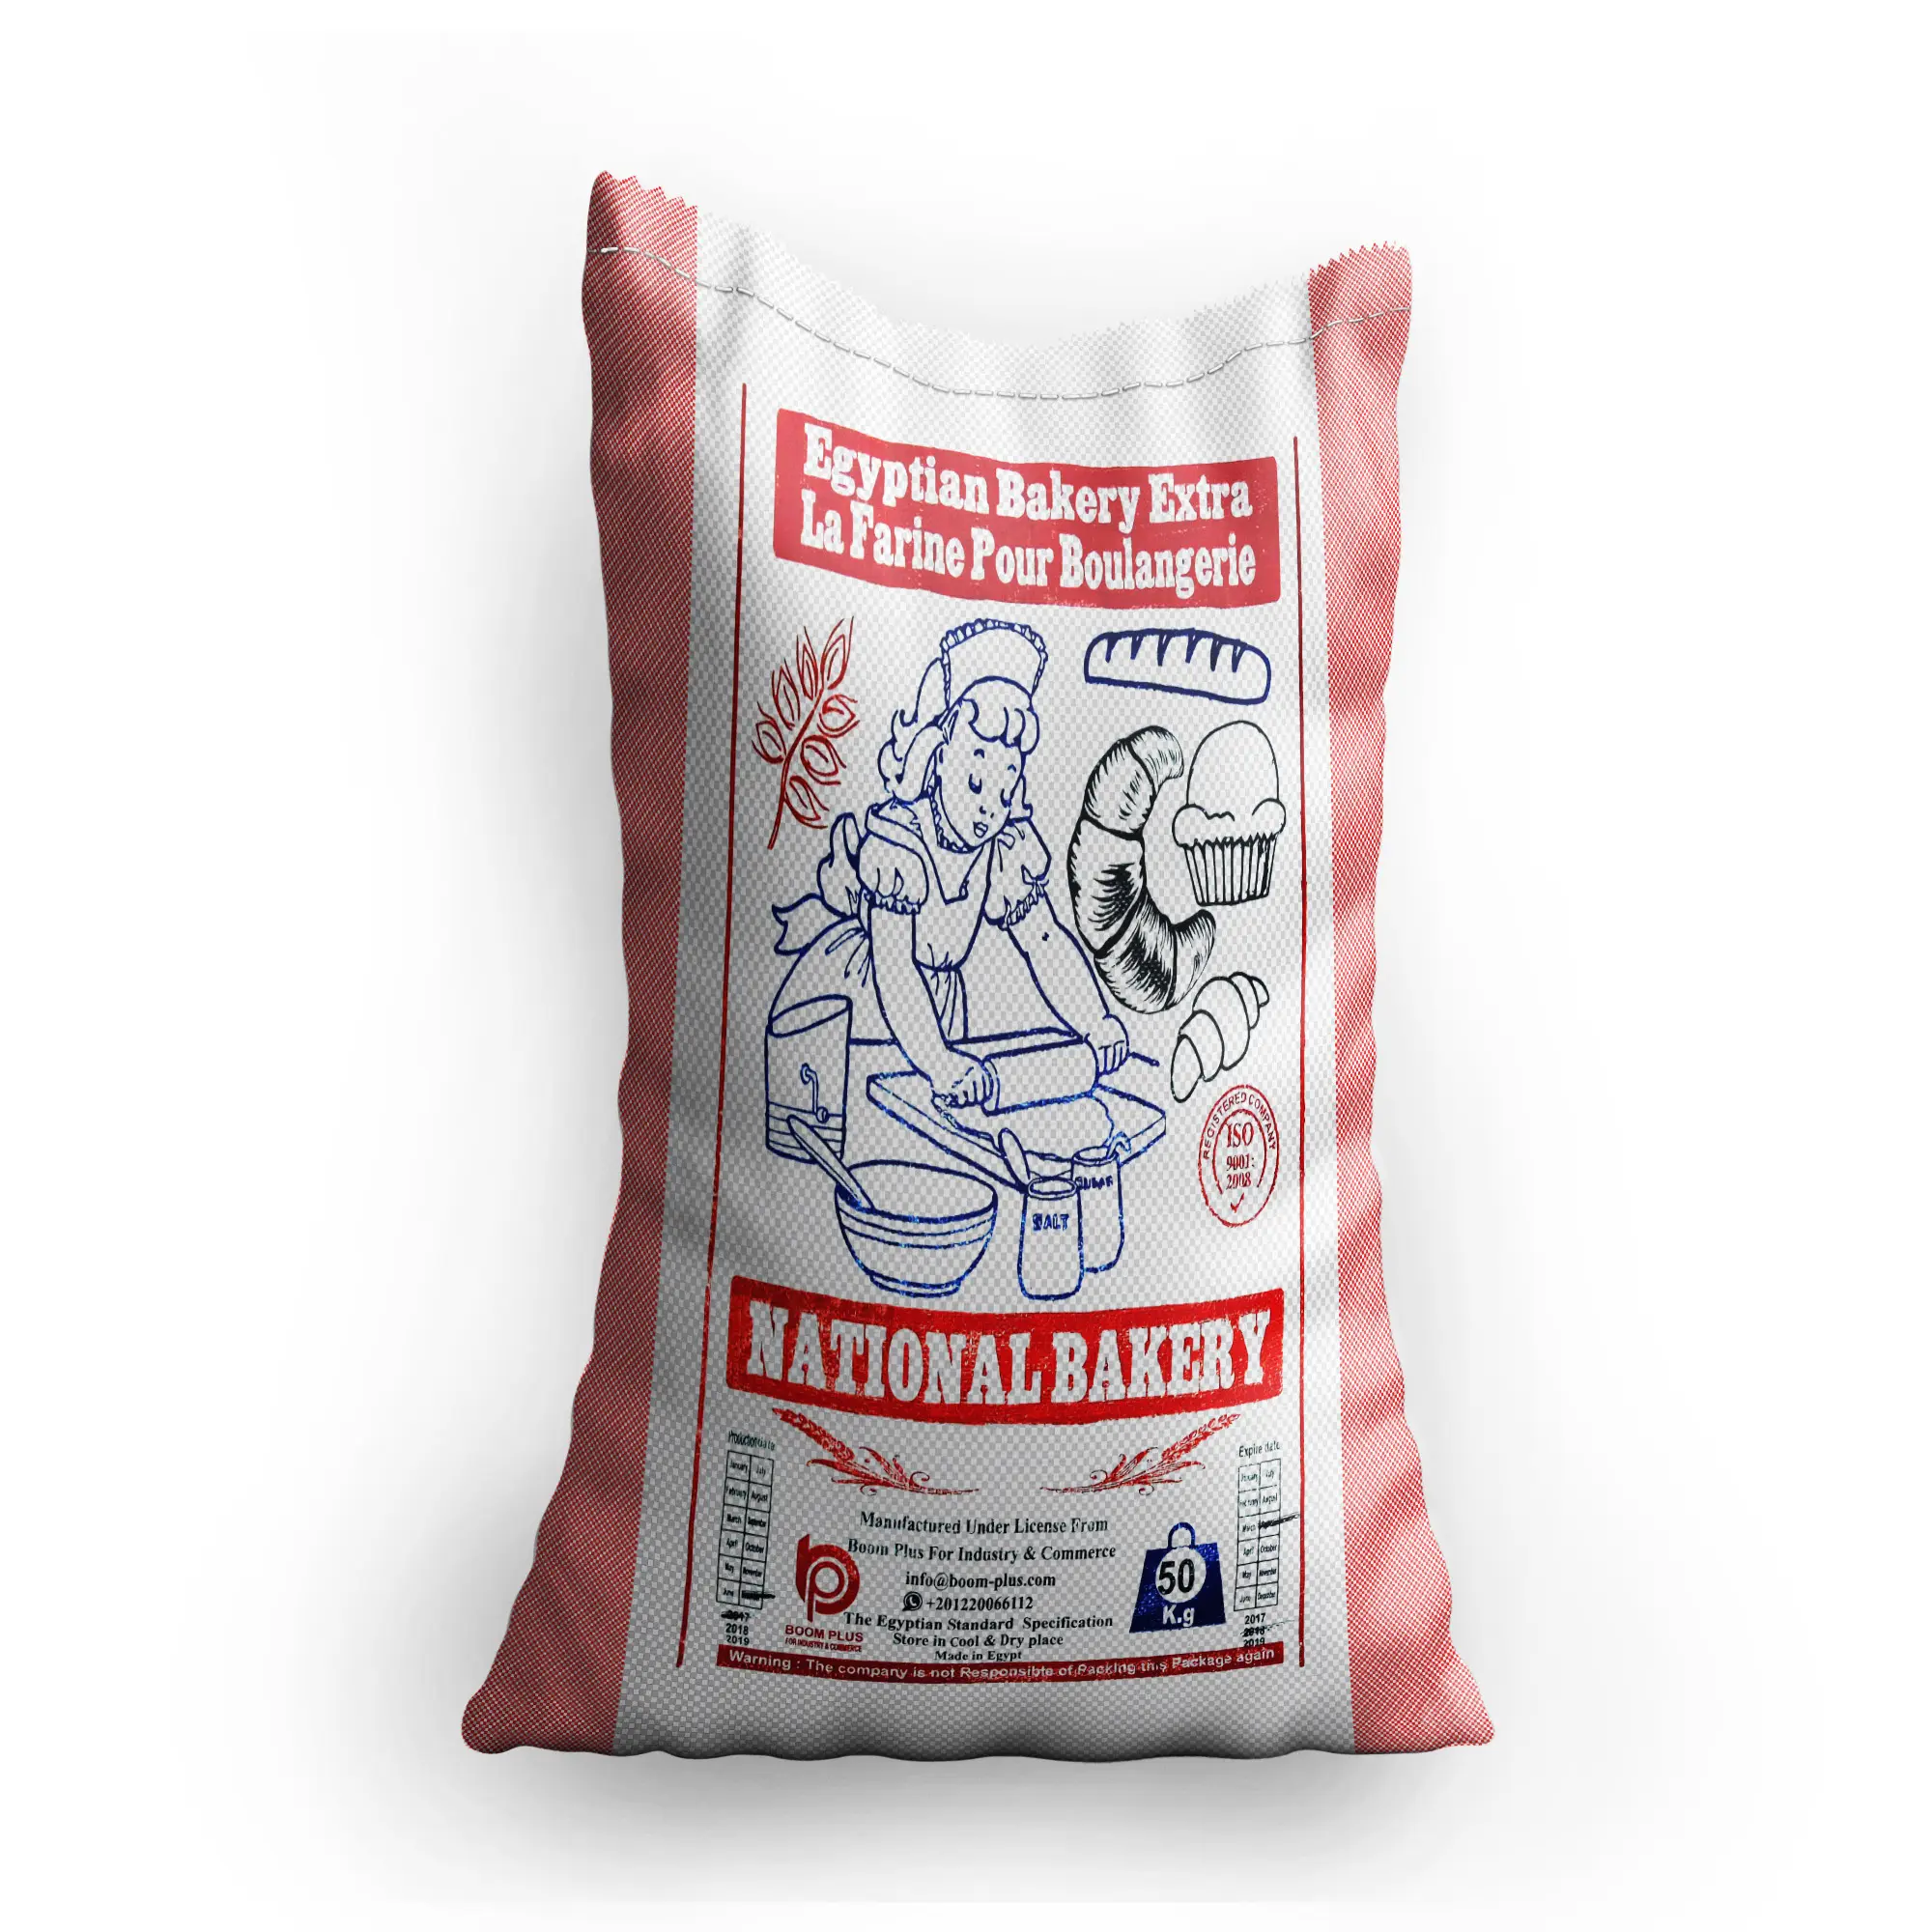 Harina de trigo blanca para todo uso, en bolsas de 25kg y 50kg, al mejor precio